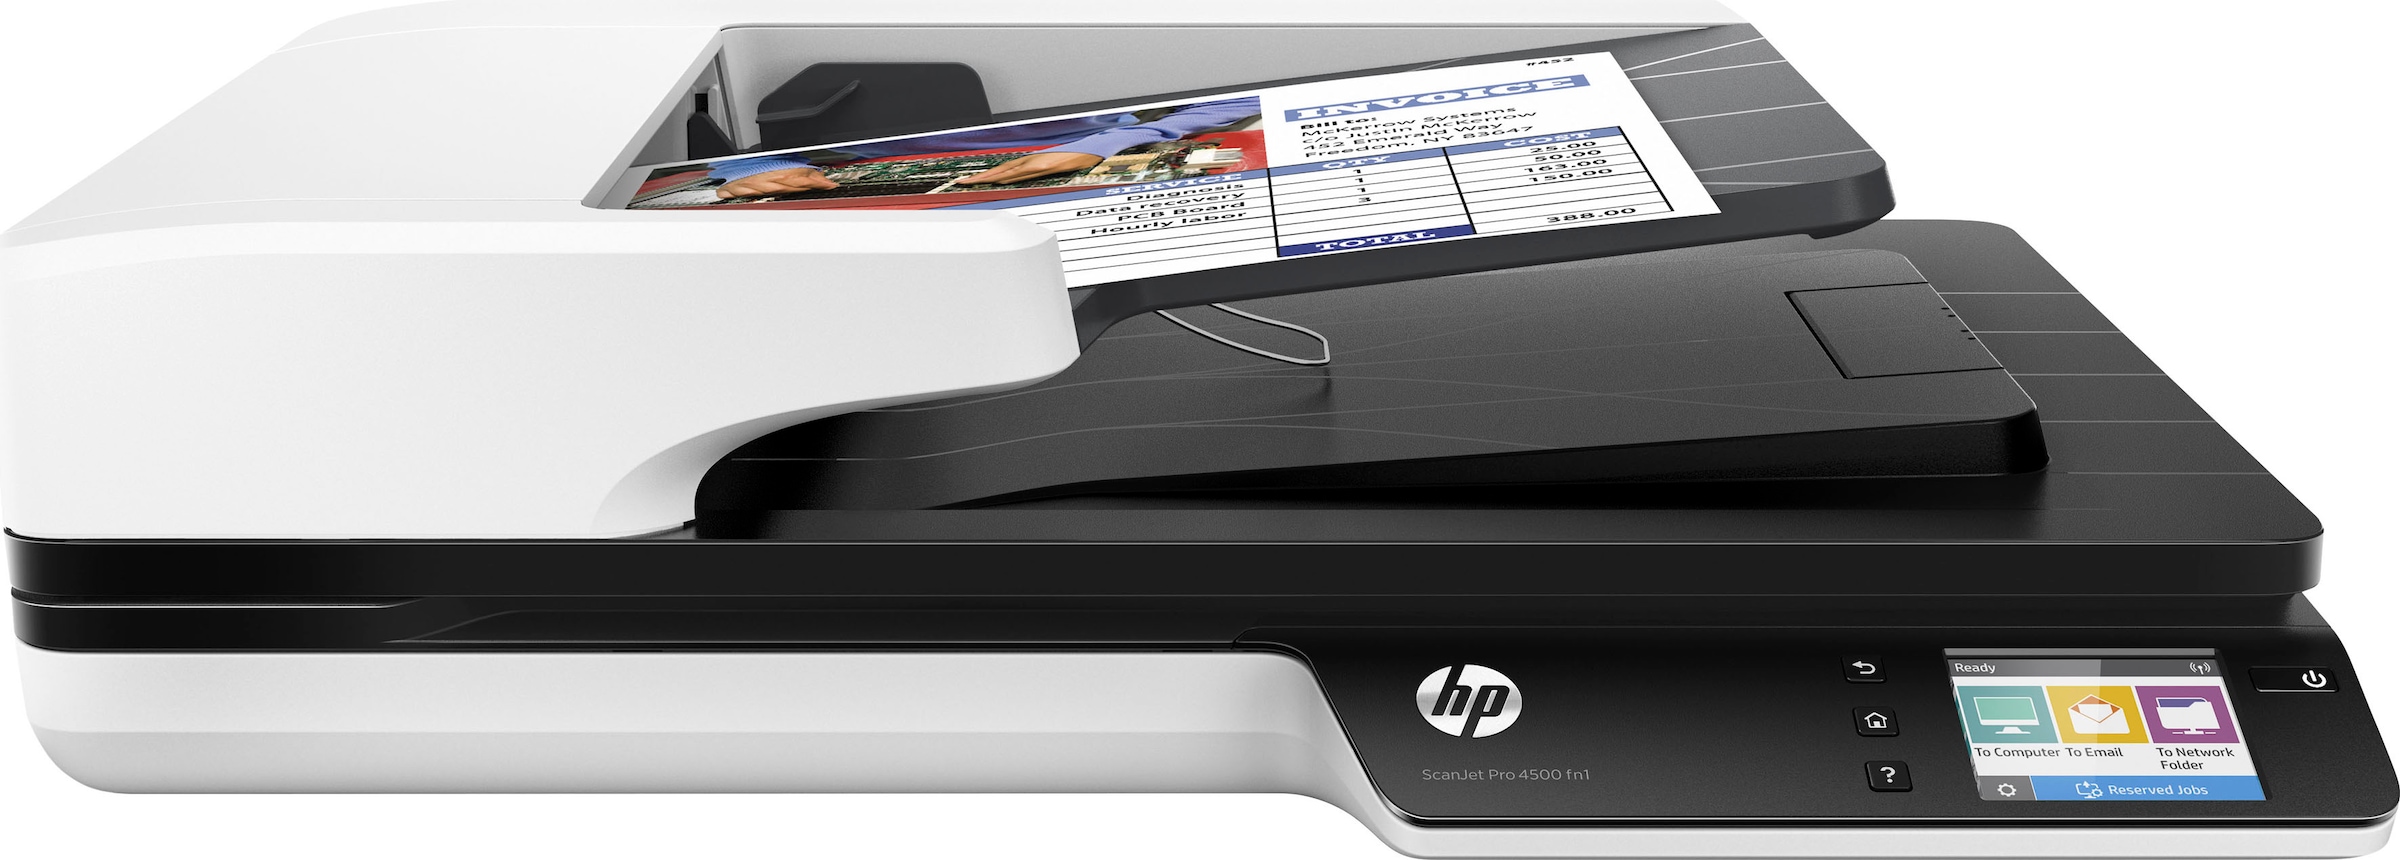 HP Scanner »Scanjet Pro 4500 fn1« + Insta...